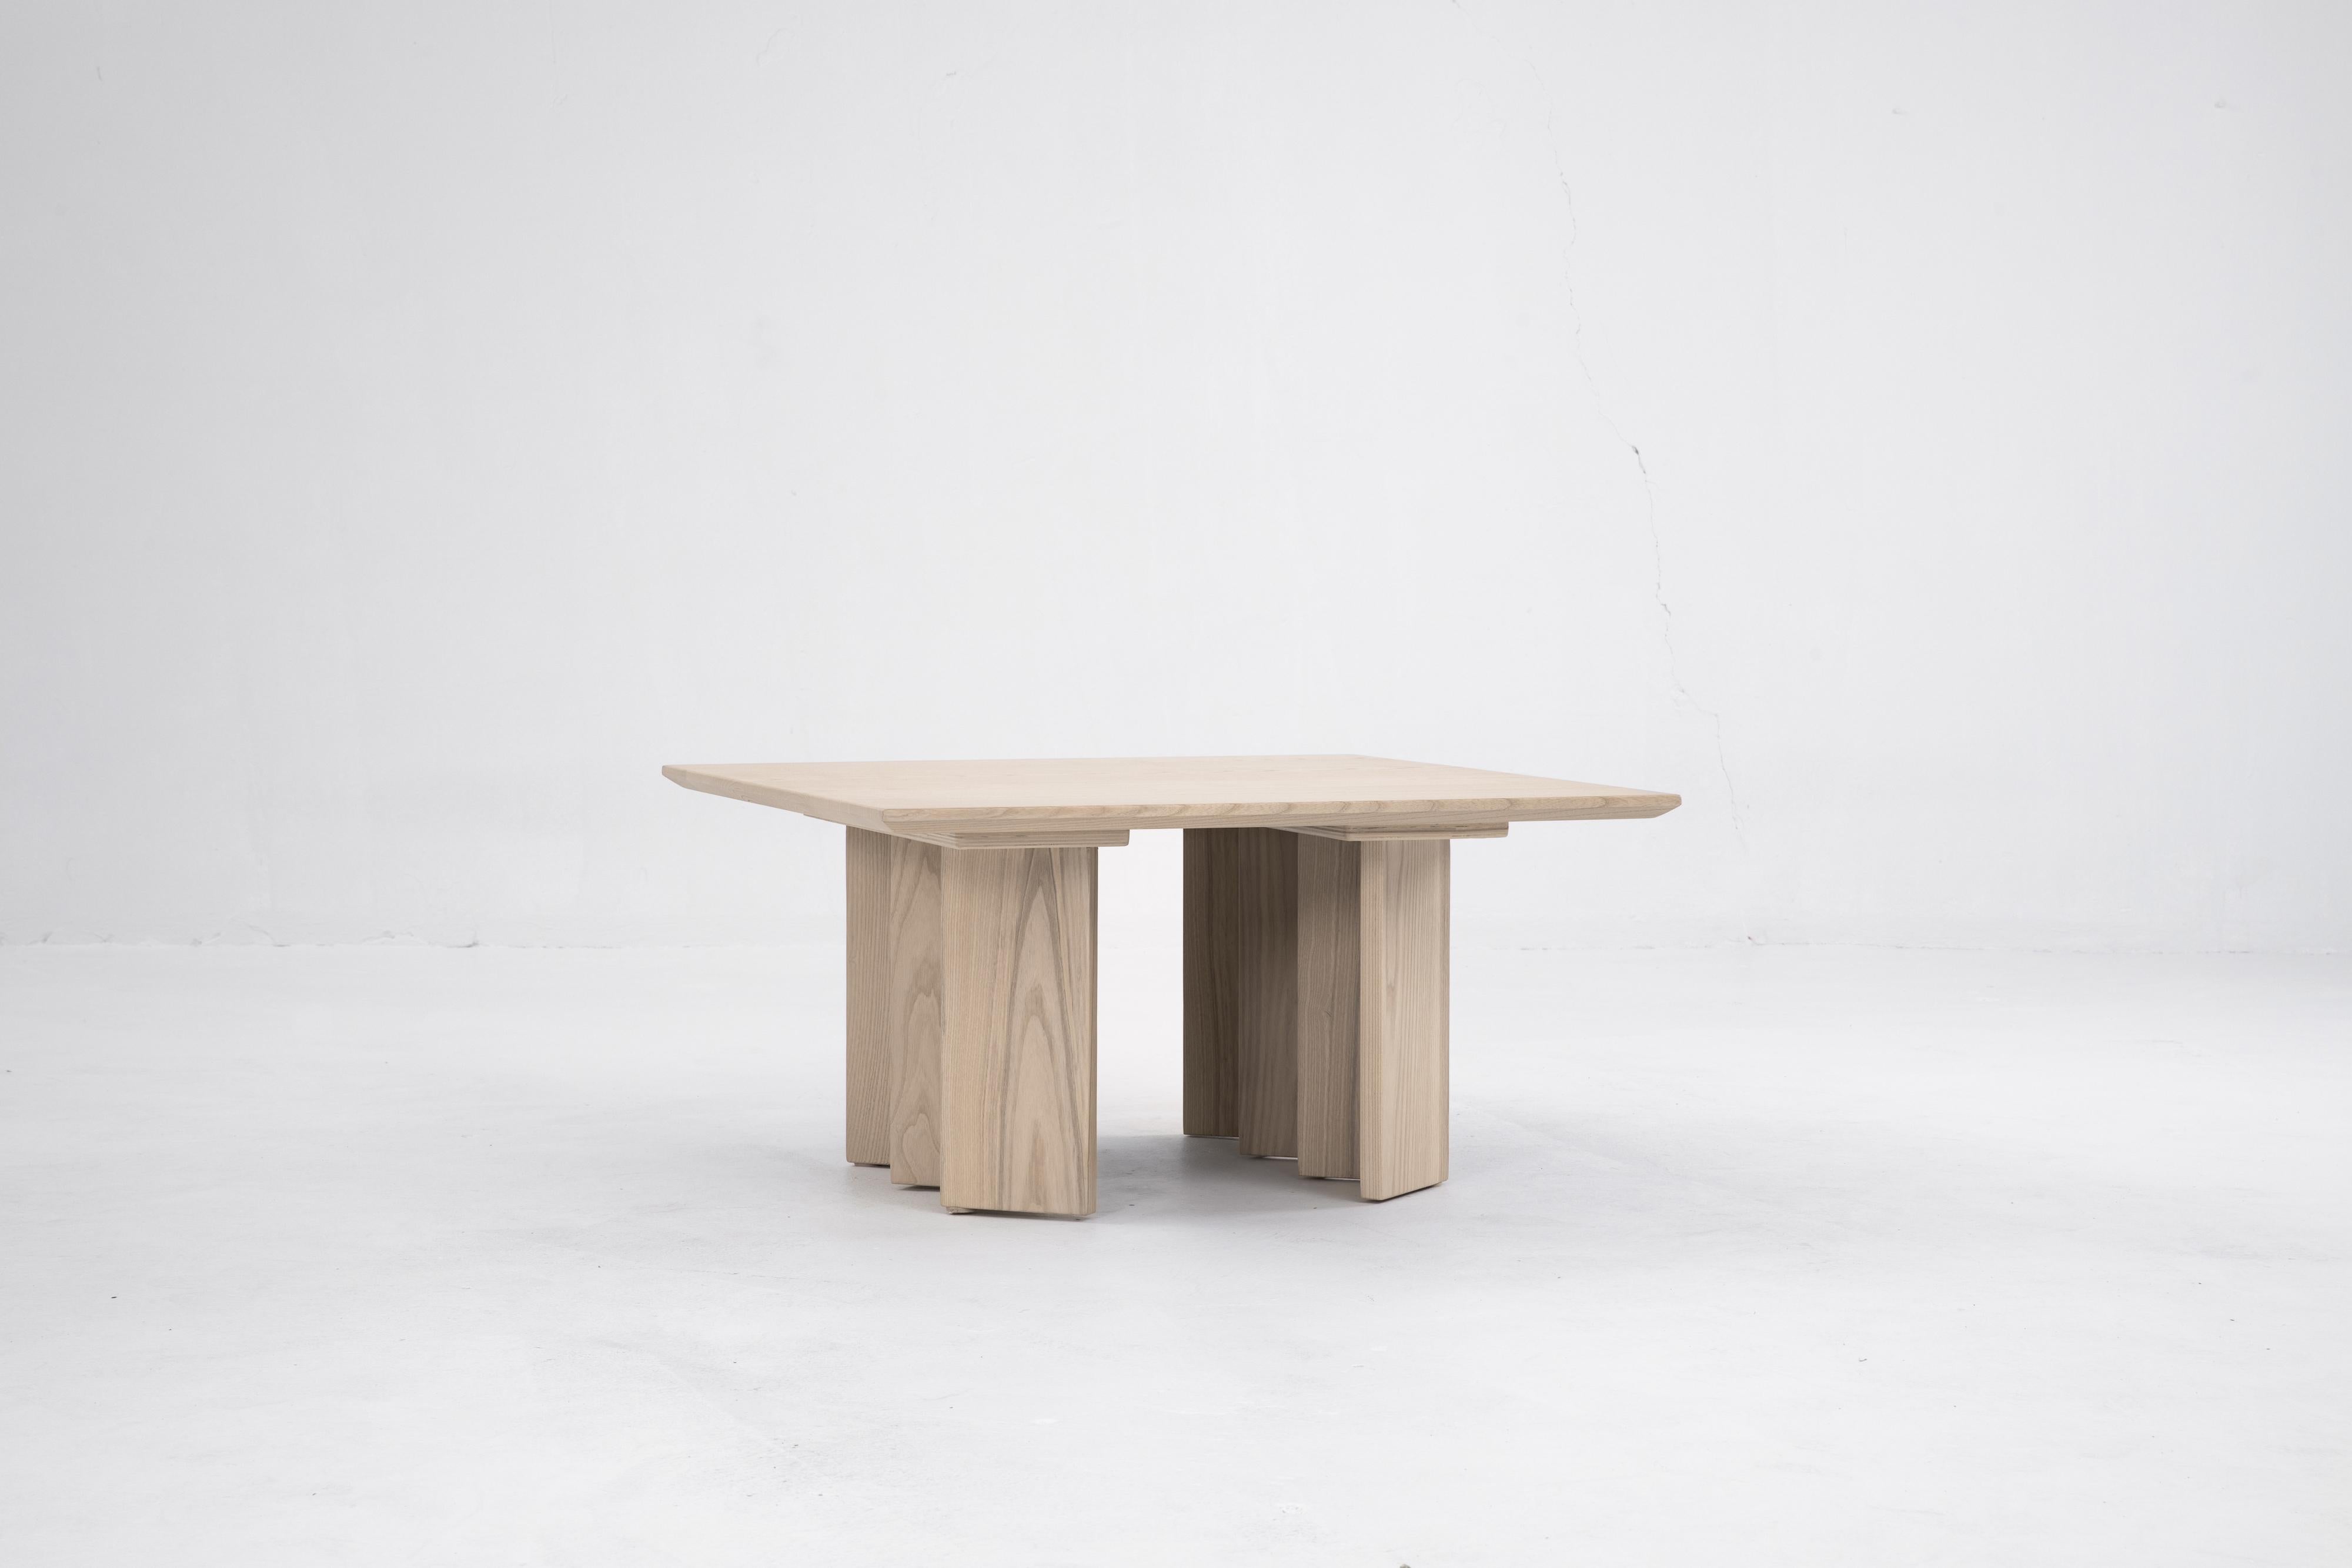 Sun at Six ist ein Studio für zeitgenössisches Möbeldesign, das mit traditionellen chinesischen Tischlermeistern zusammenarbeitet, um unsere Stücke in Handarbeit mit traditionellen Tischlerarbeiten herzustellen. 

Großartige Möbel beginnen mit